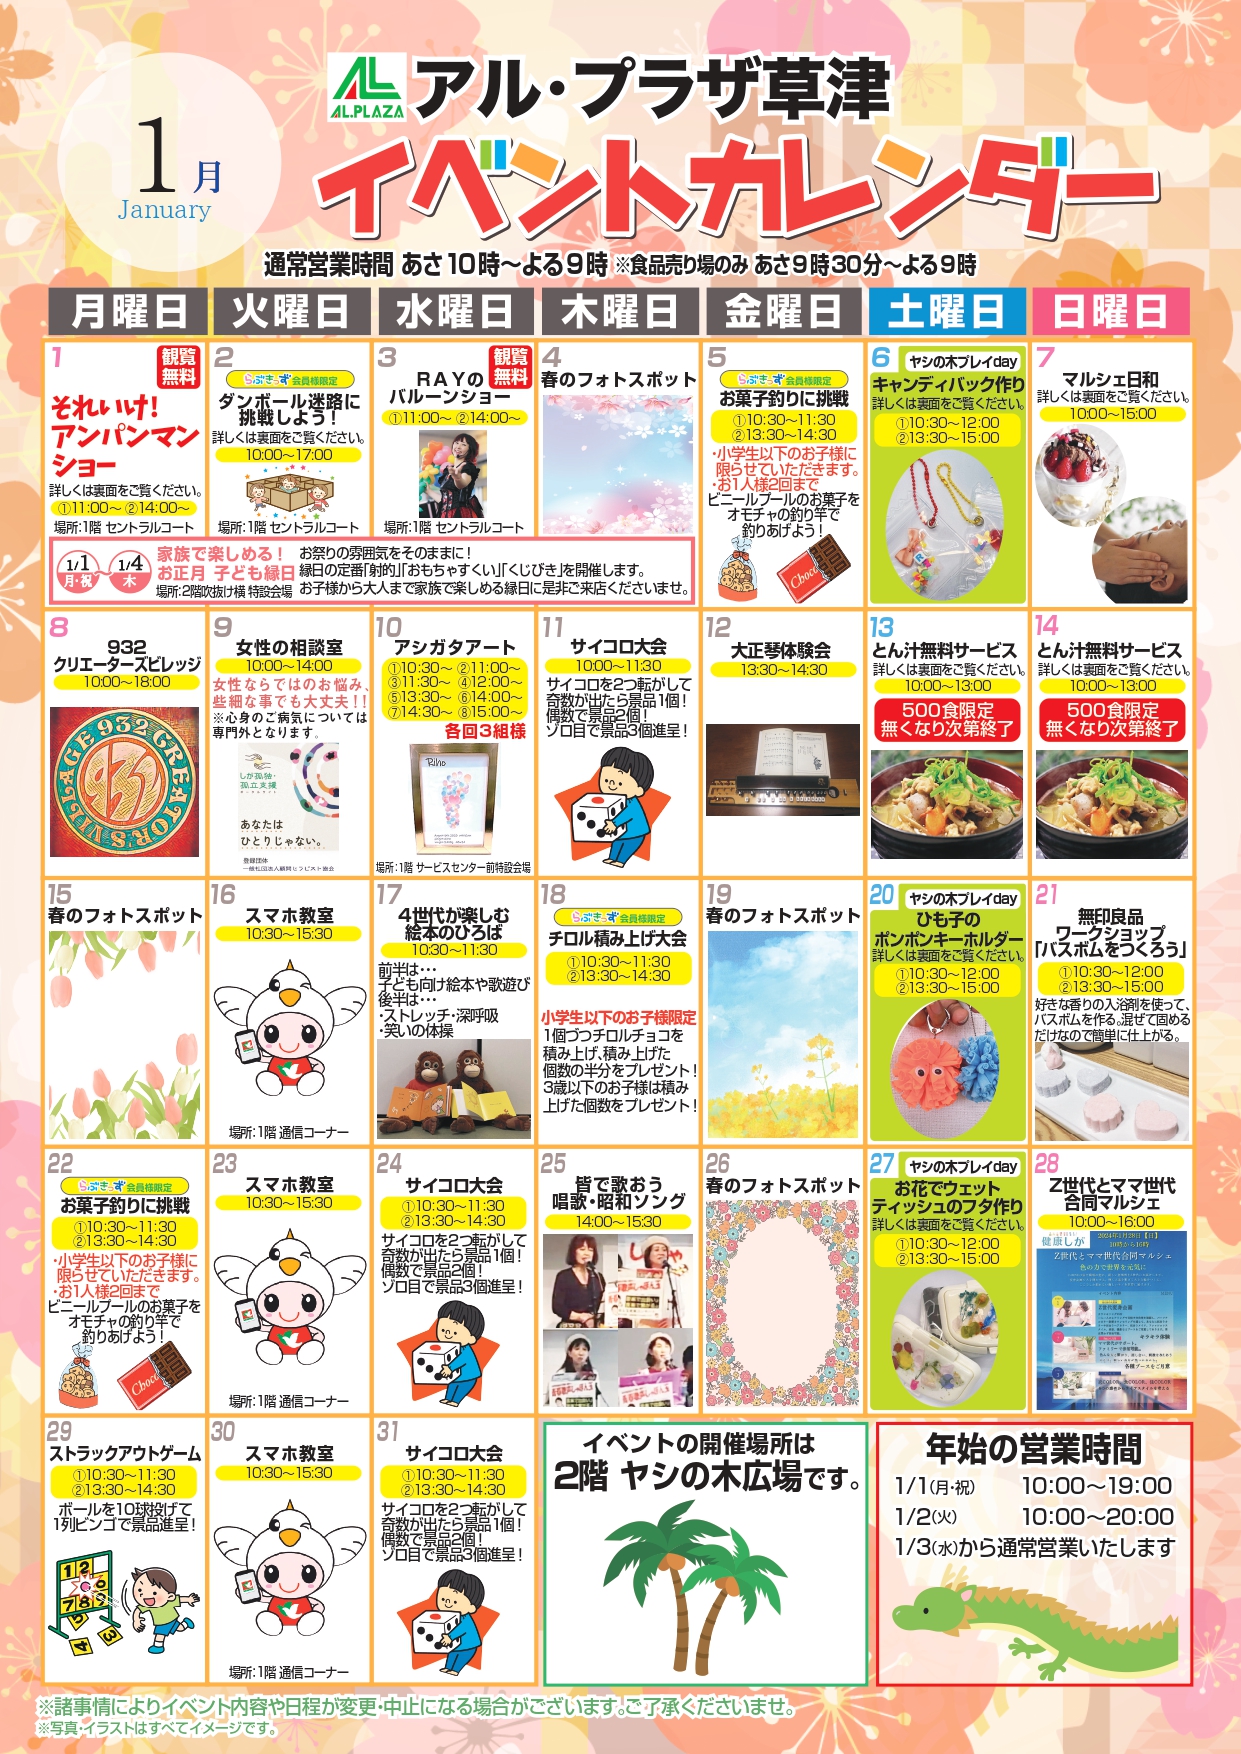 【1月】草津イベントカレンダー_A4 (3)_page-0001